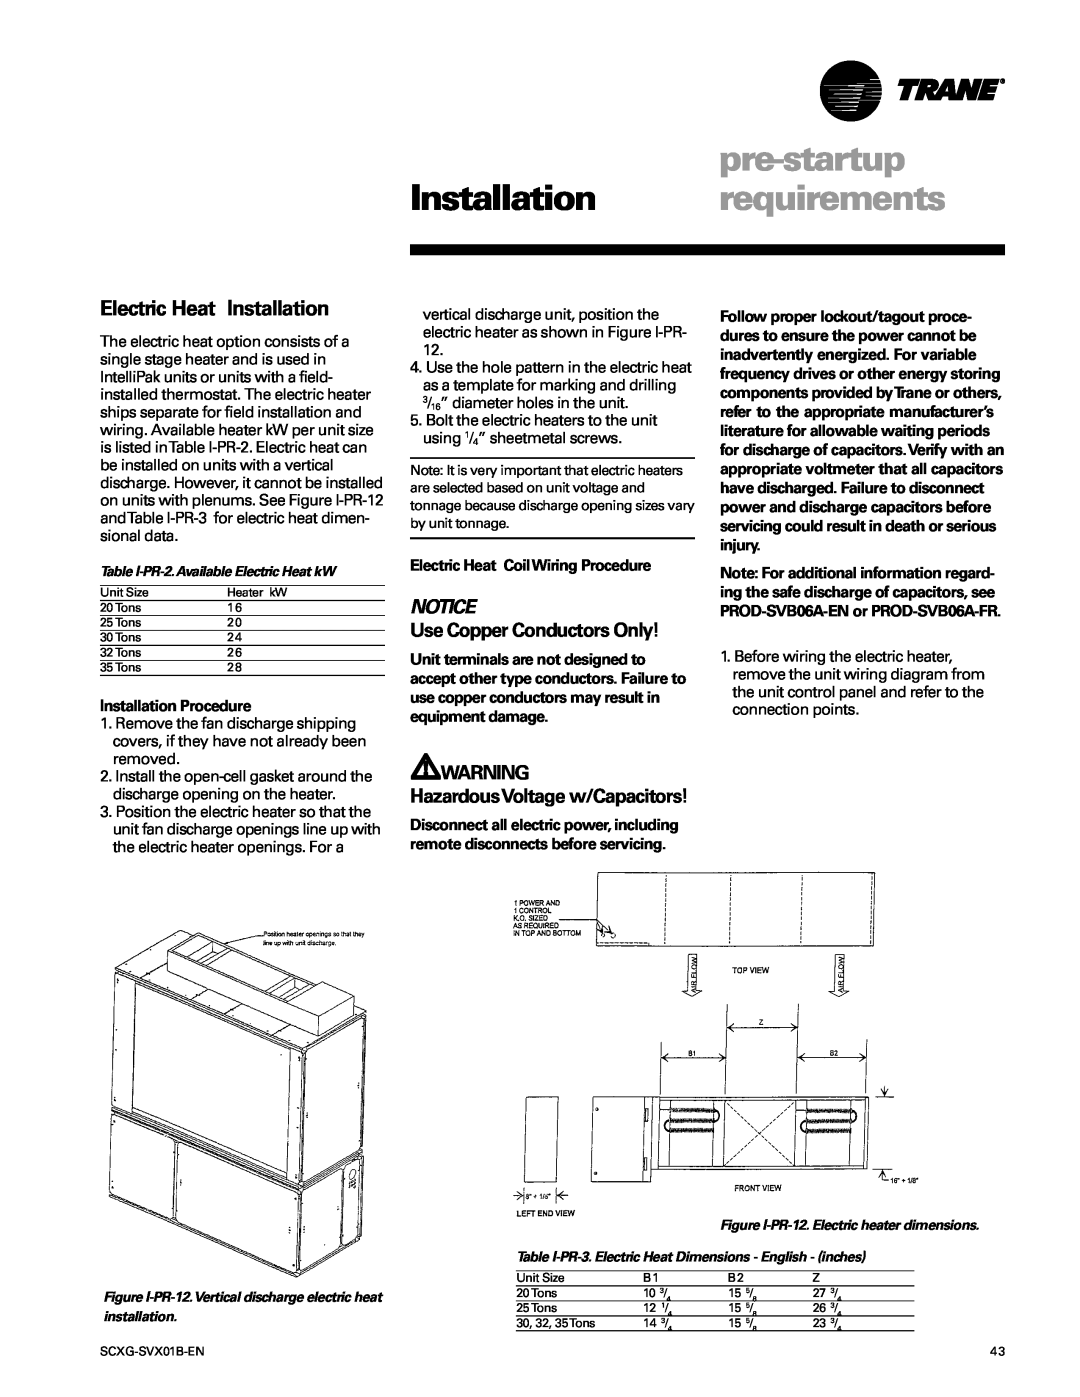 Trane SCXG-SVX01B-EN Electric Heat Installation, pre-startup, Installation requirements, Notice, Installation Procedure 